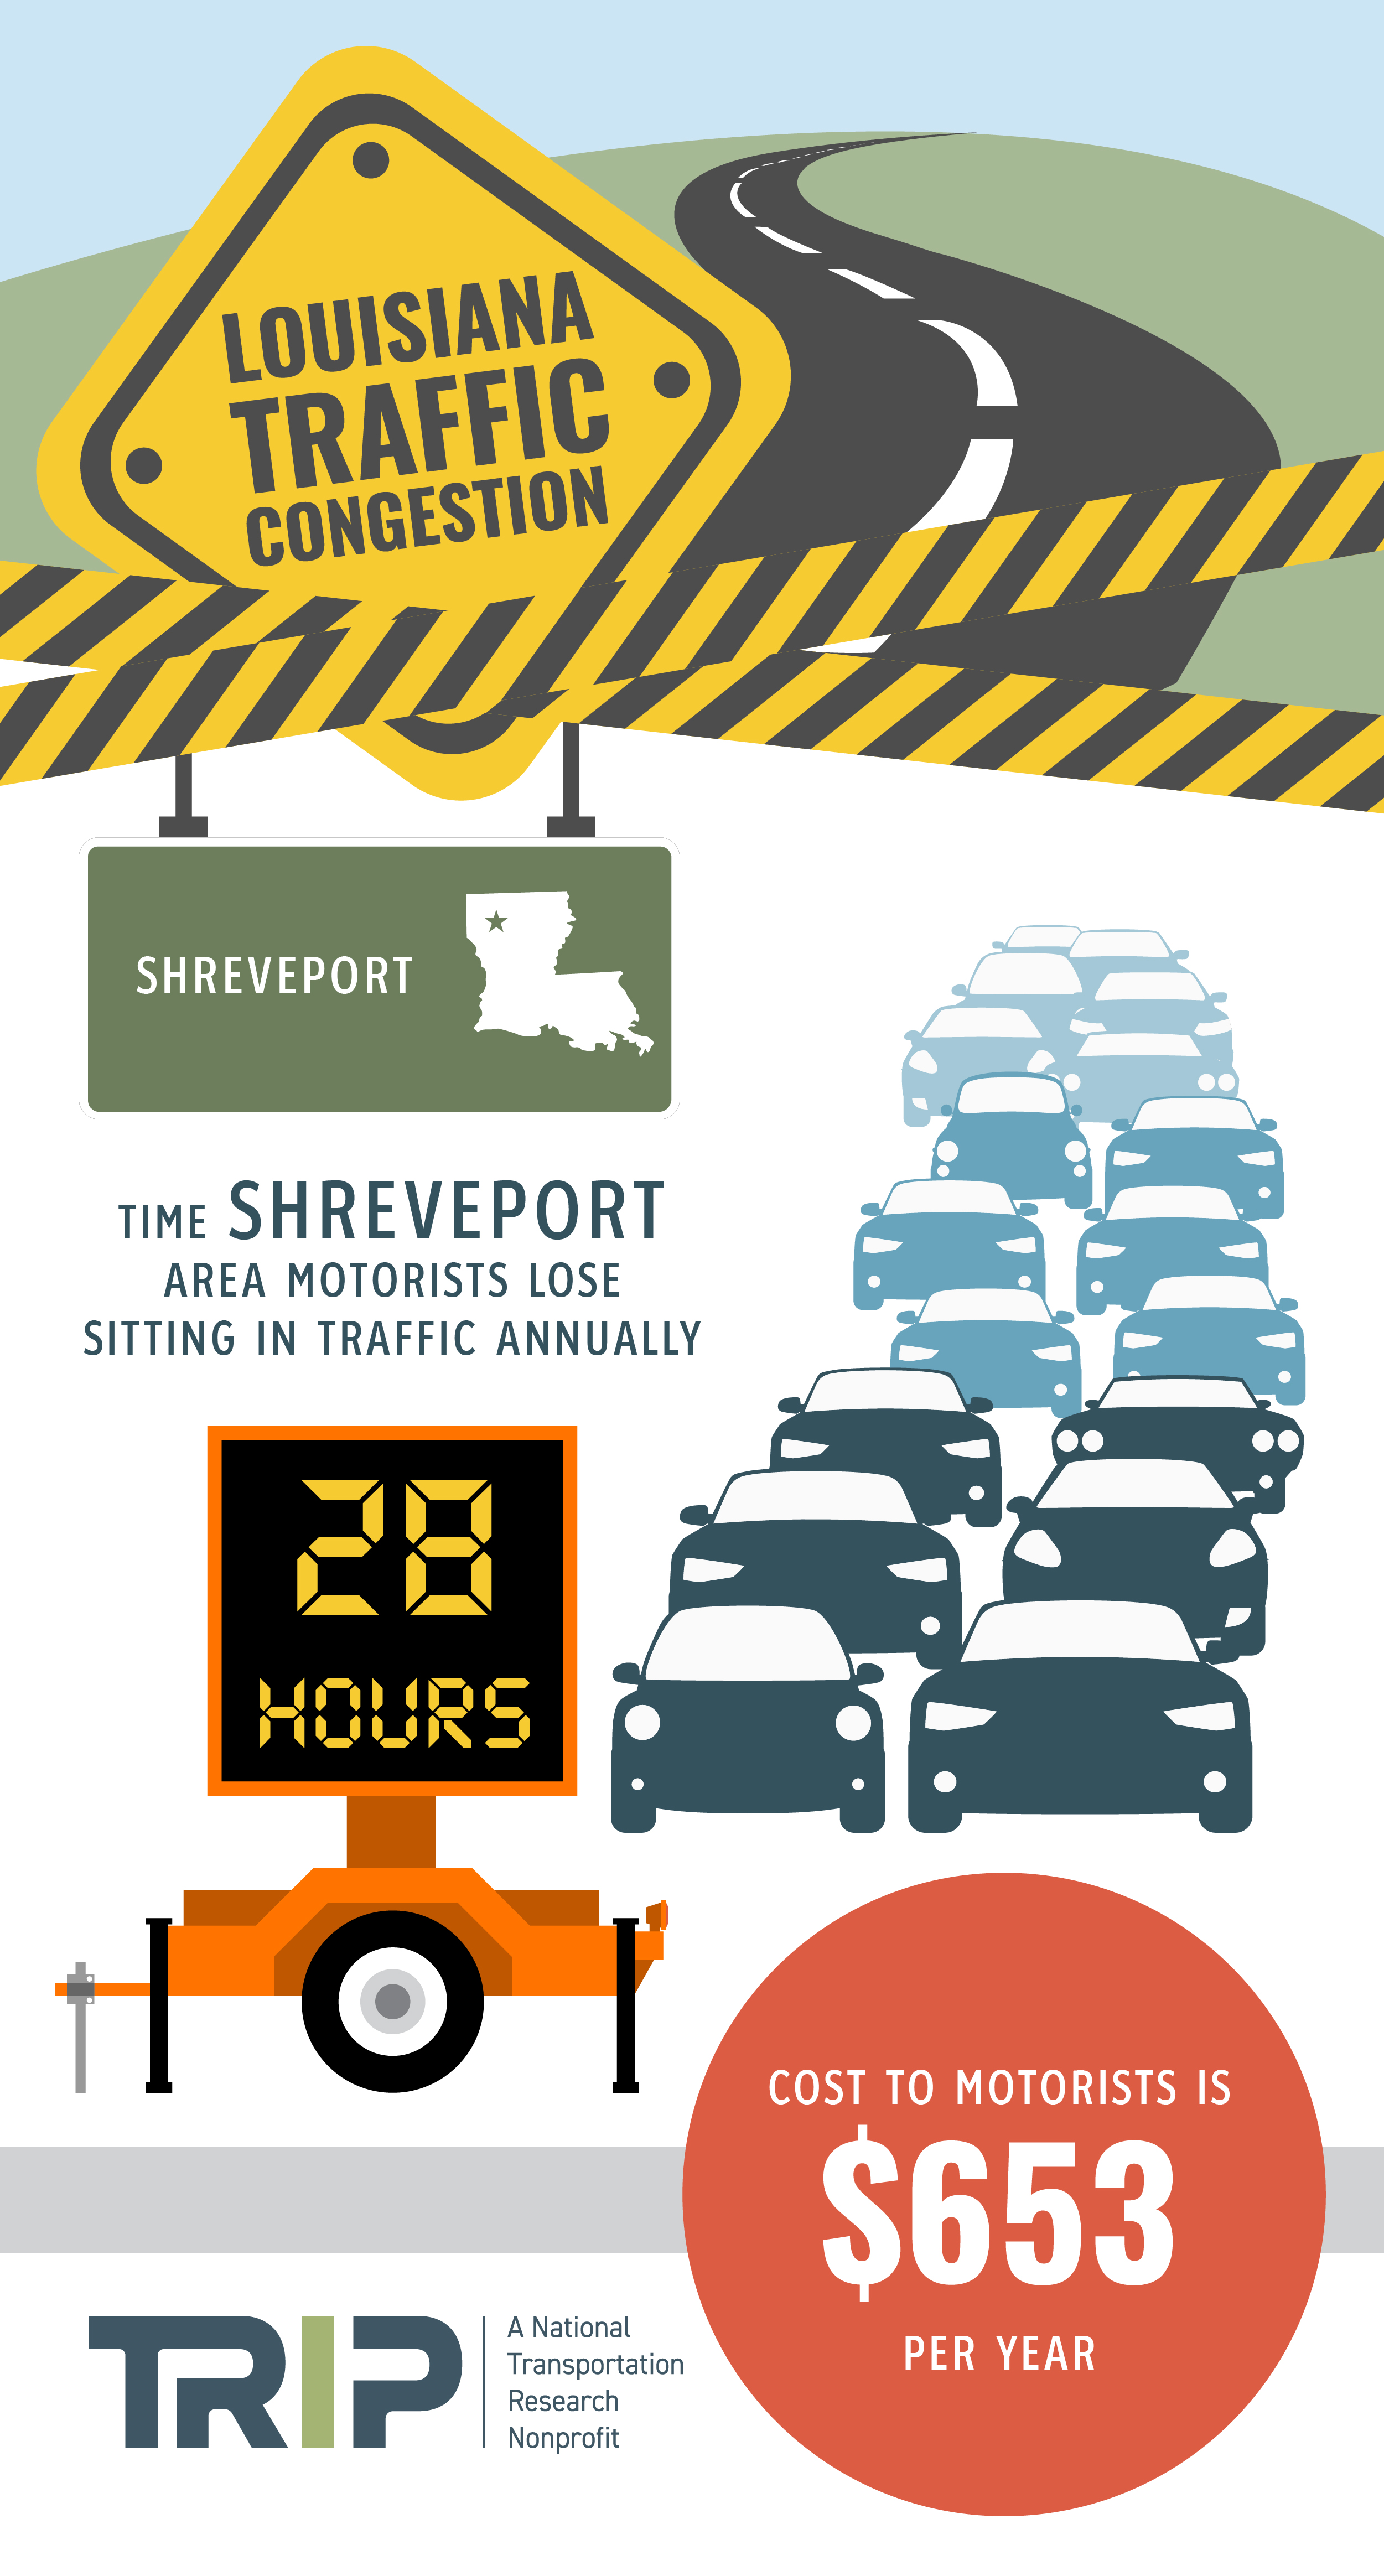 Shreveport Traffic Congestion Infographic – October 2019